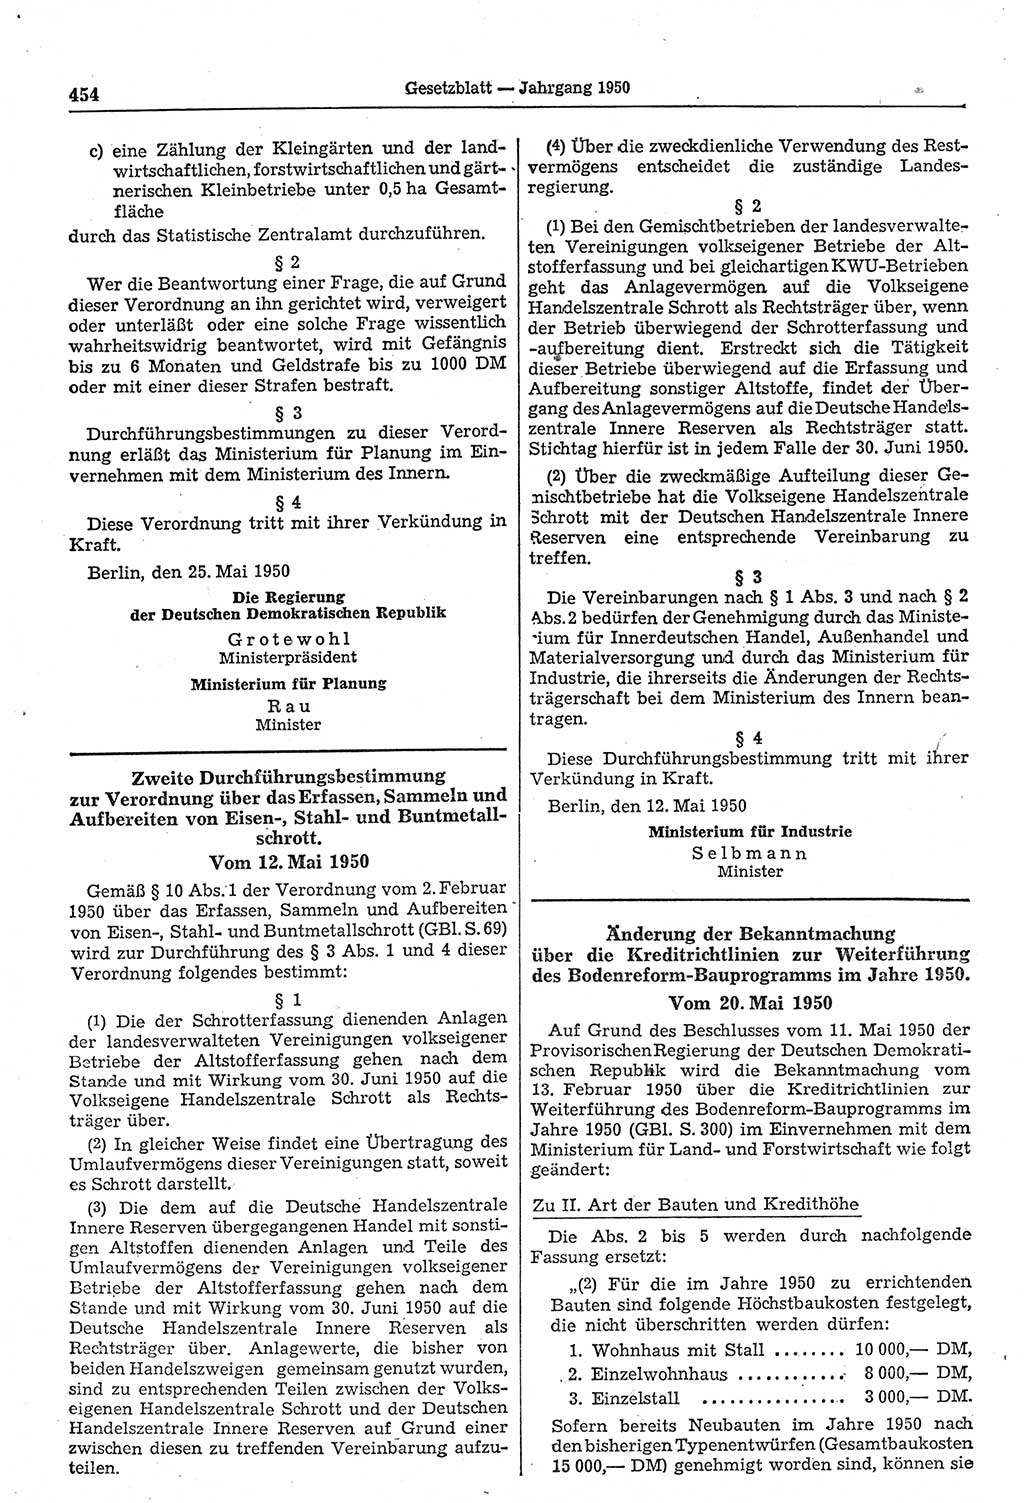 Gesetzblatt (GBl.) der Deutschen Demokratischen Republik (DDR) 1950, Seite 454 (GBl. DDR 1950, S. 454)